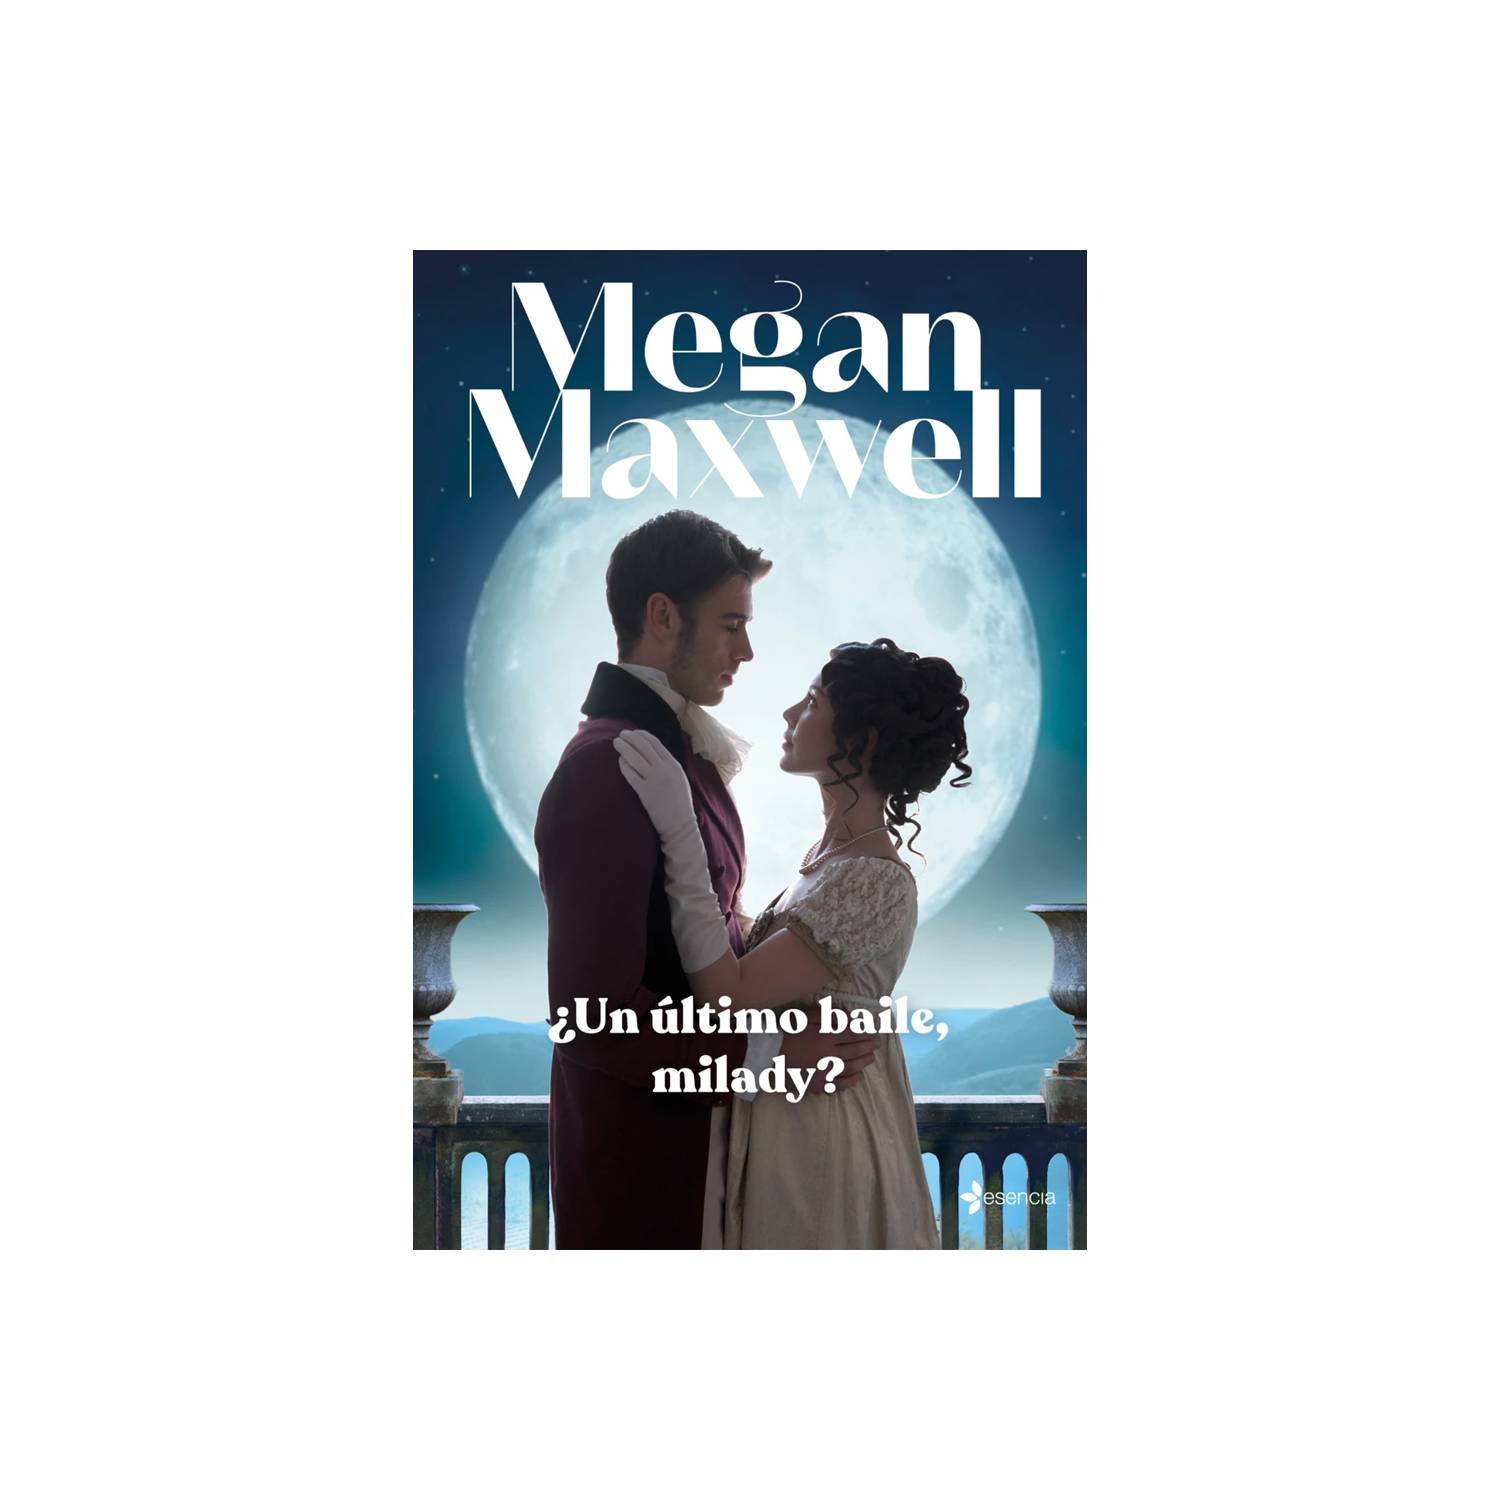 Un último baile, milady? by Megan Maxwell